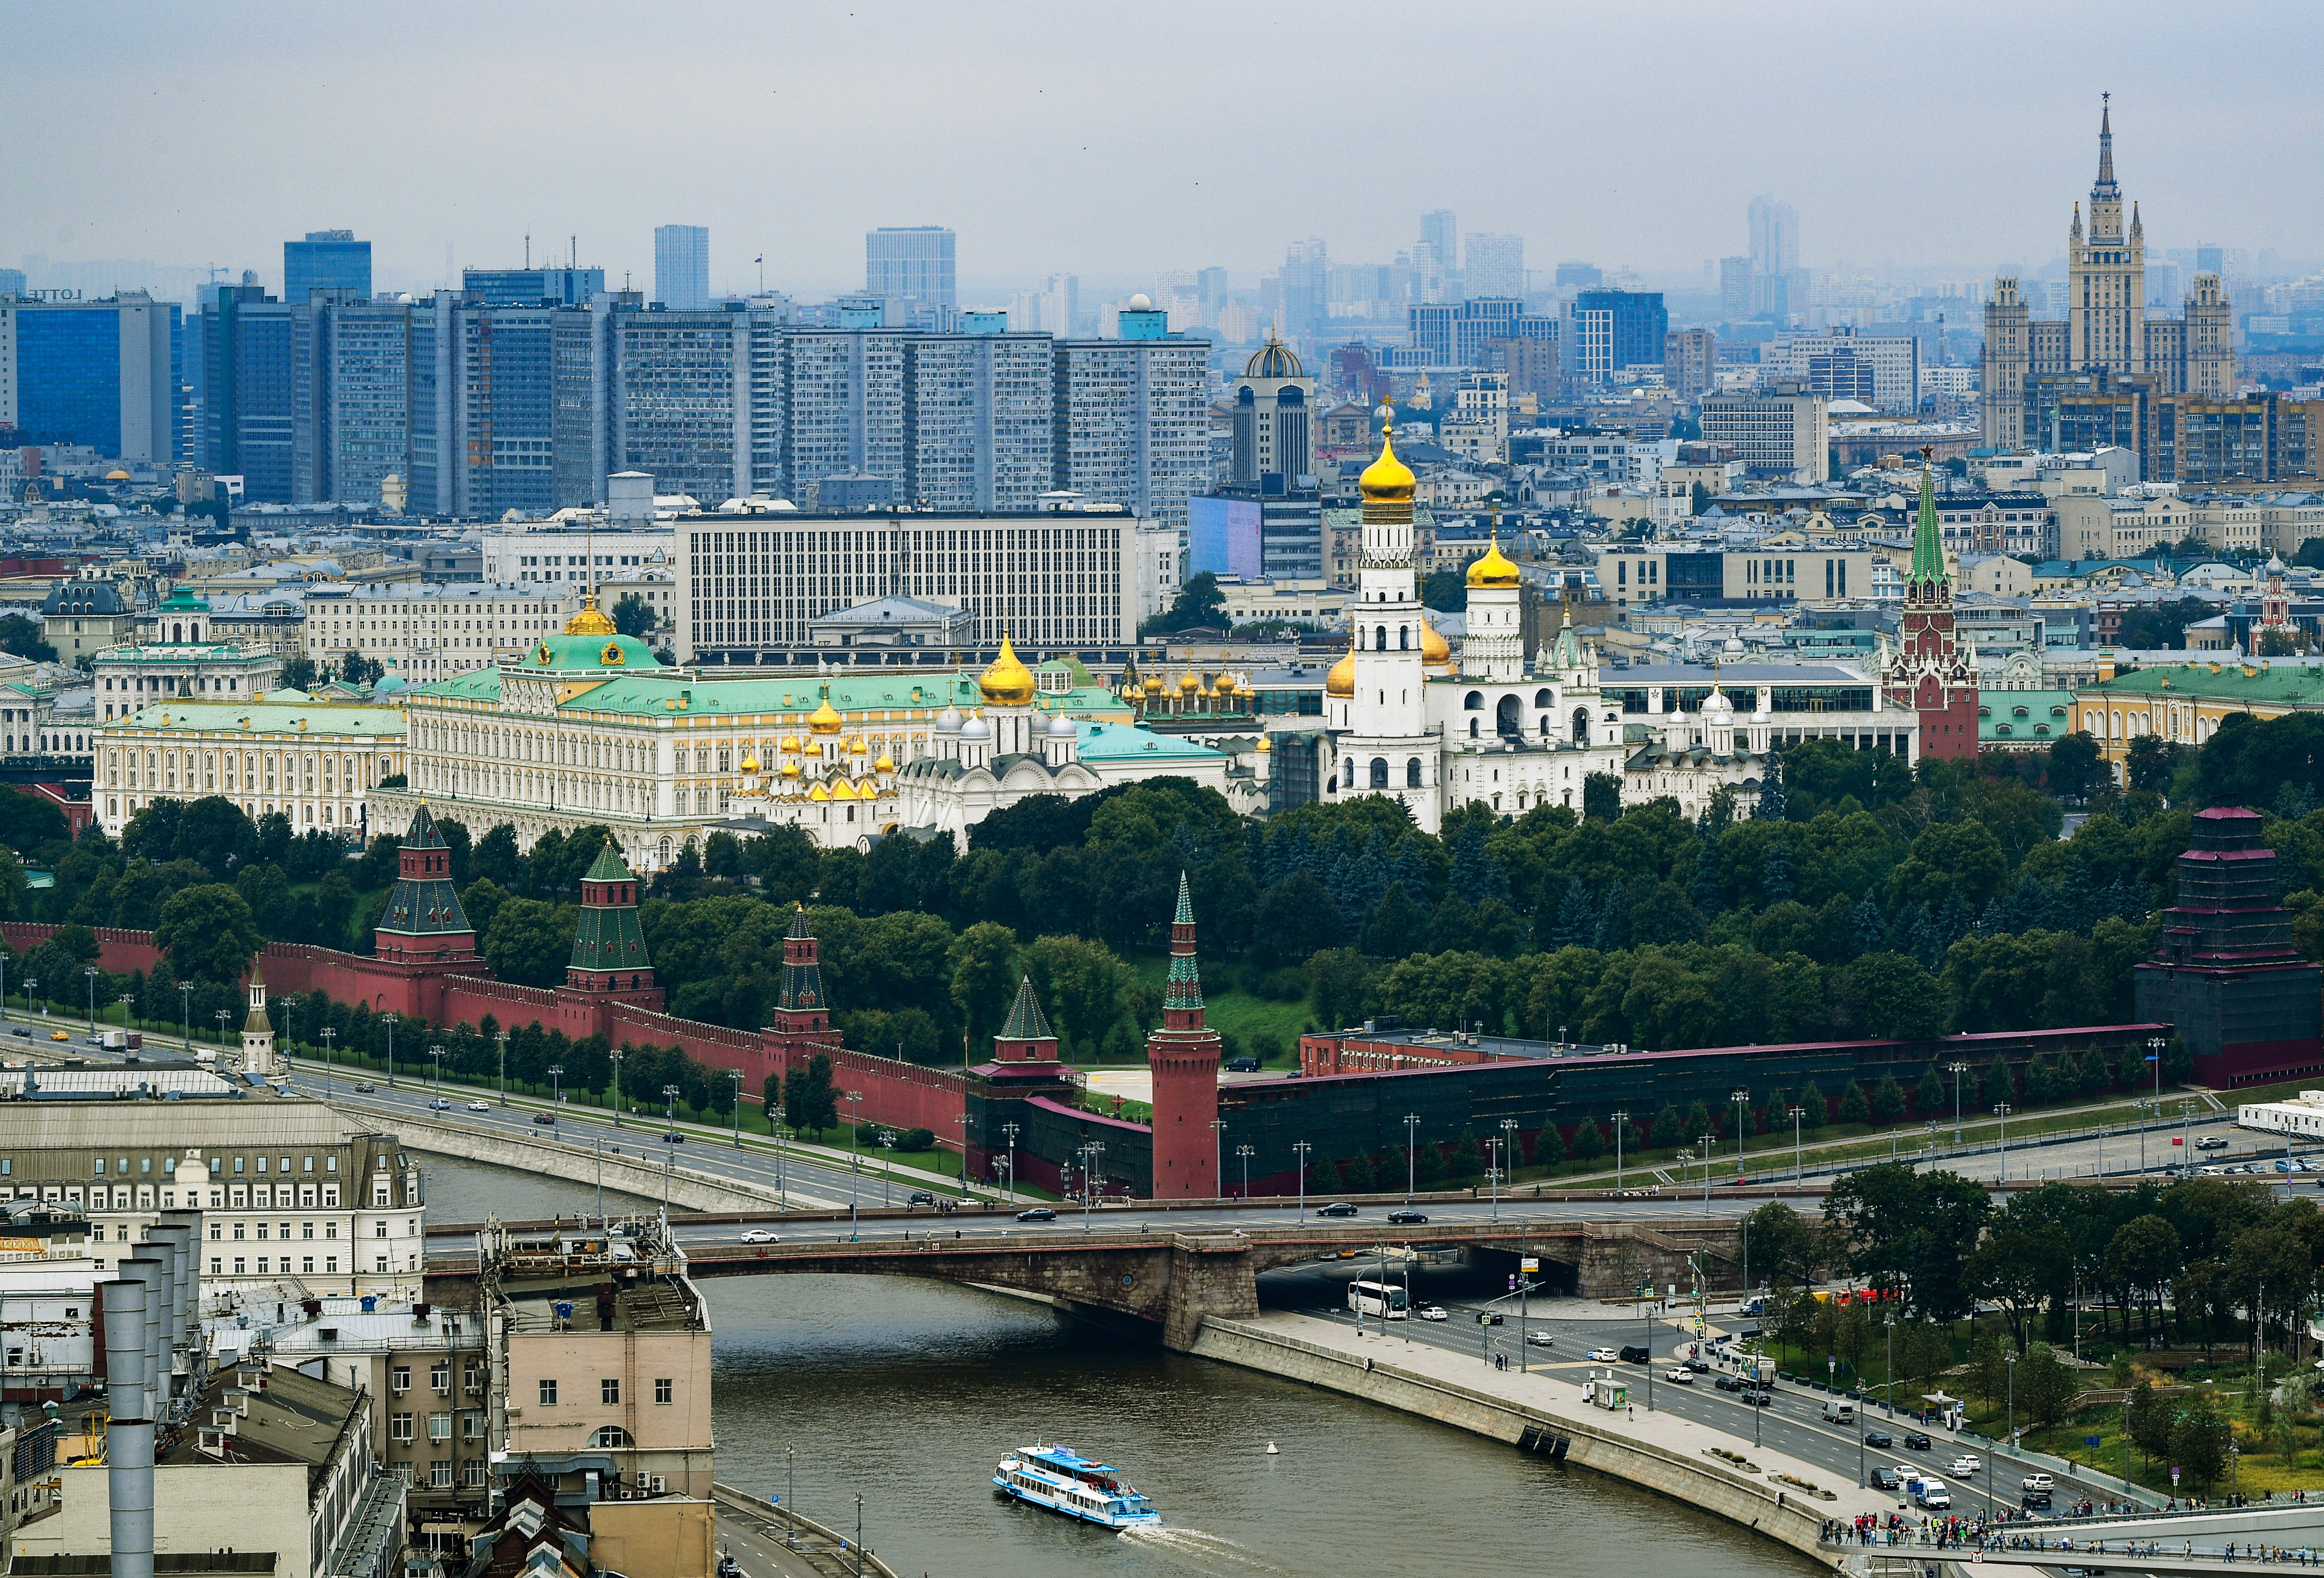 Московский. Центр столицы Москва. Москва - столица России. Панорамы Москвы с воздуха. Высотки Москвы.